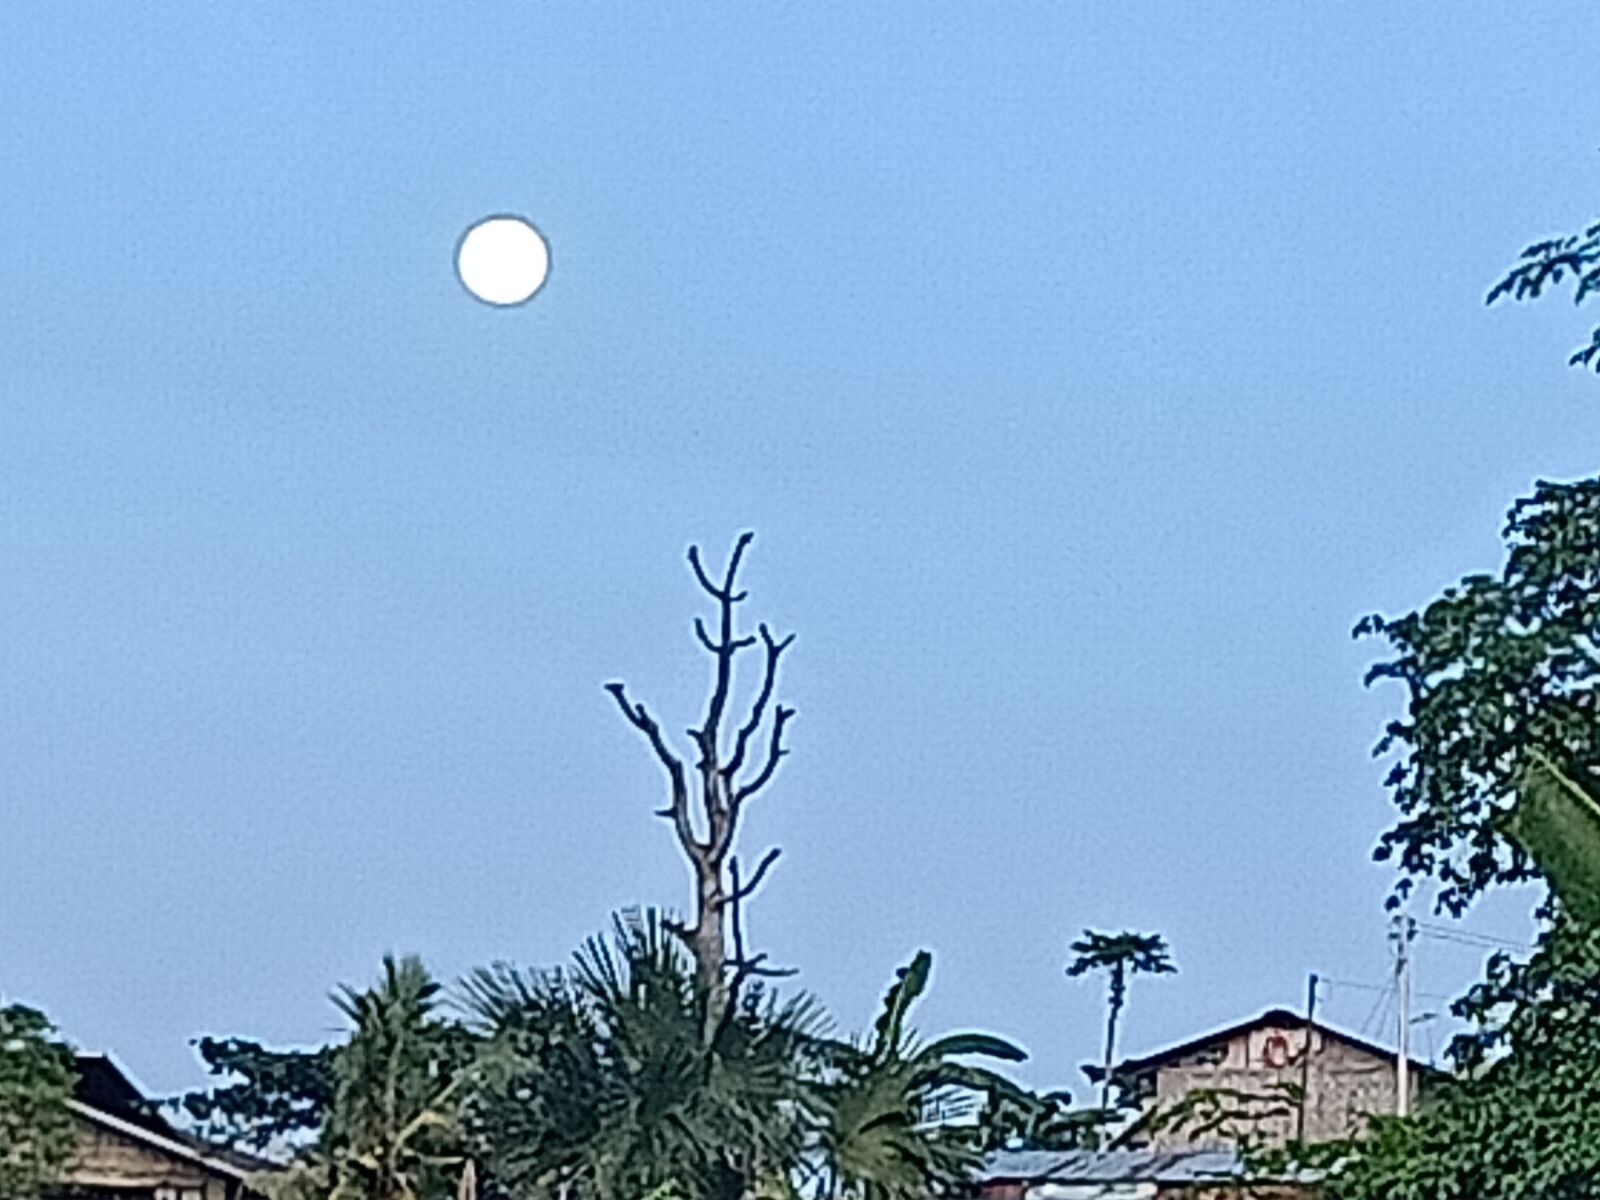 OPPO RENO2 F sample photo. Moon, giant tree, sky photography